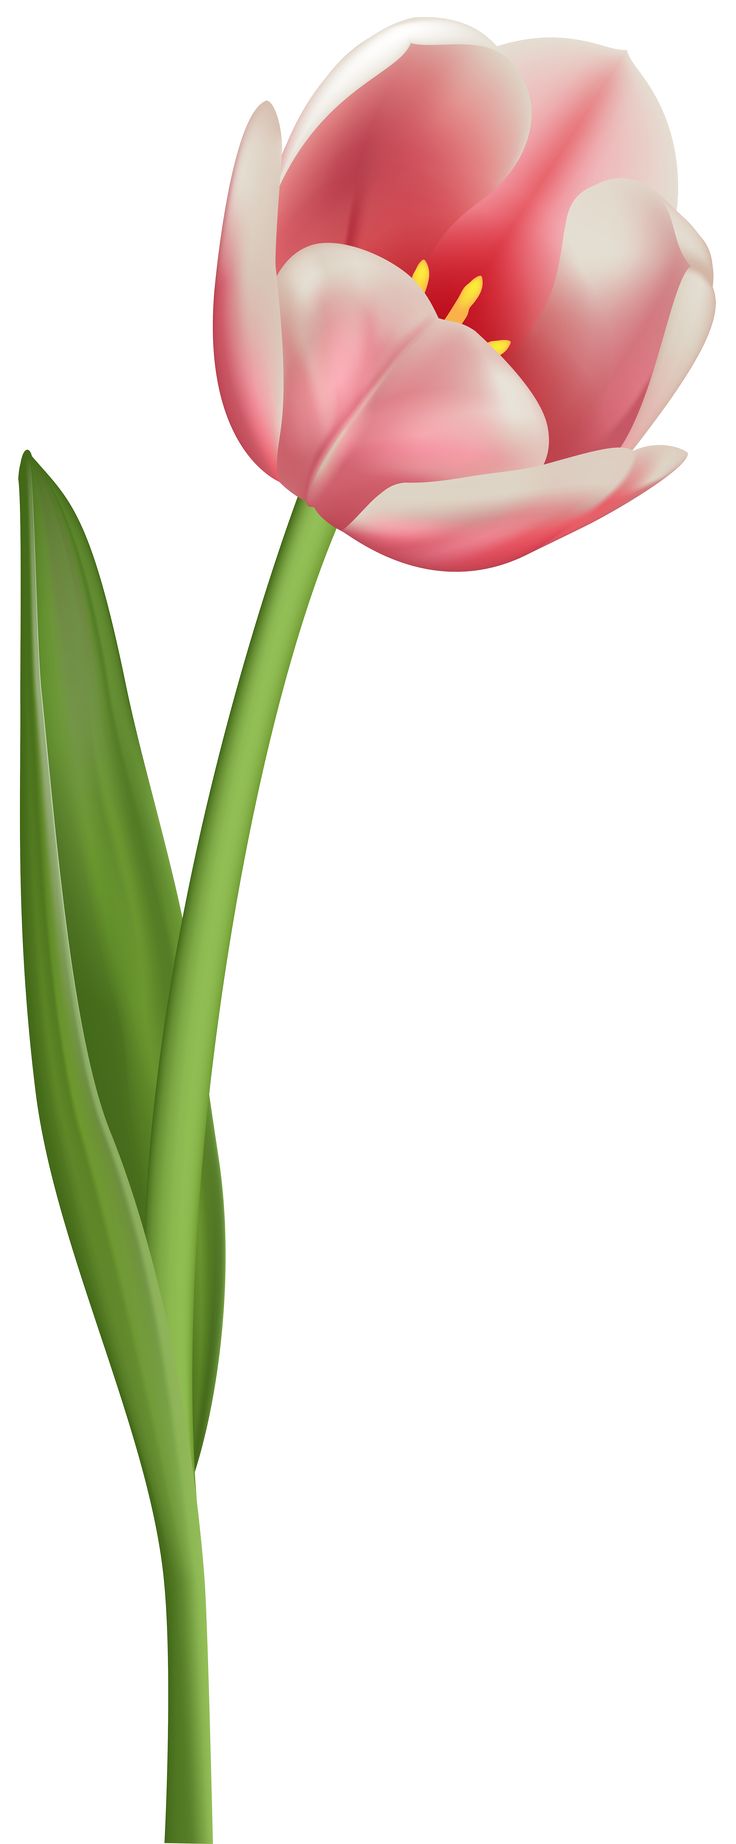 Tulip Clipart Images